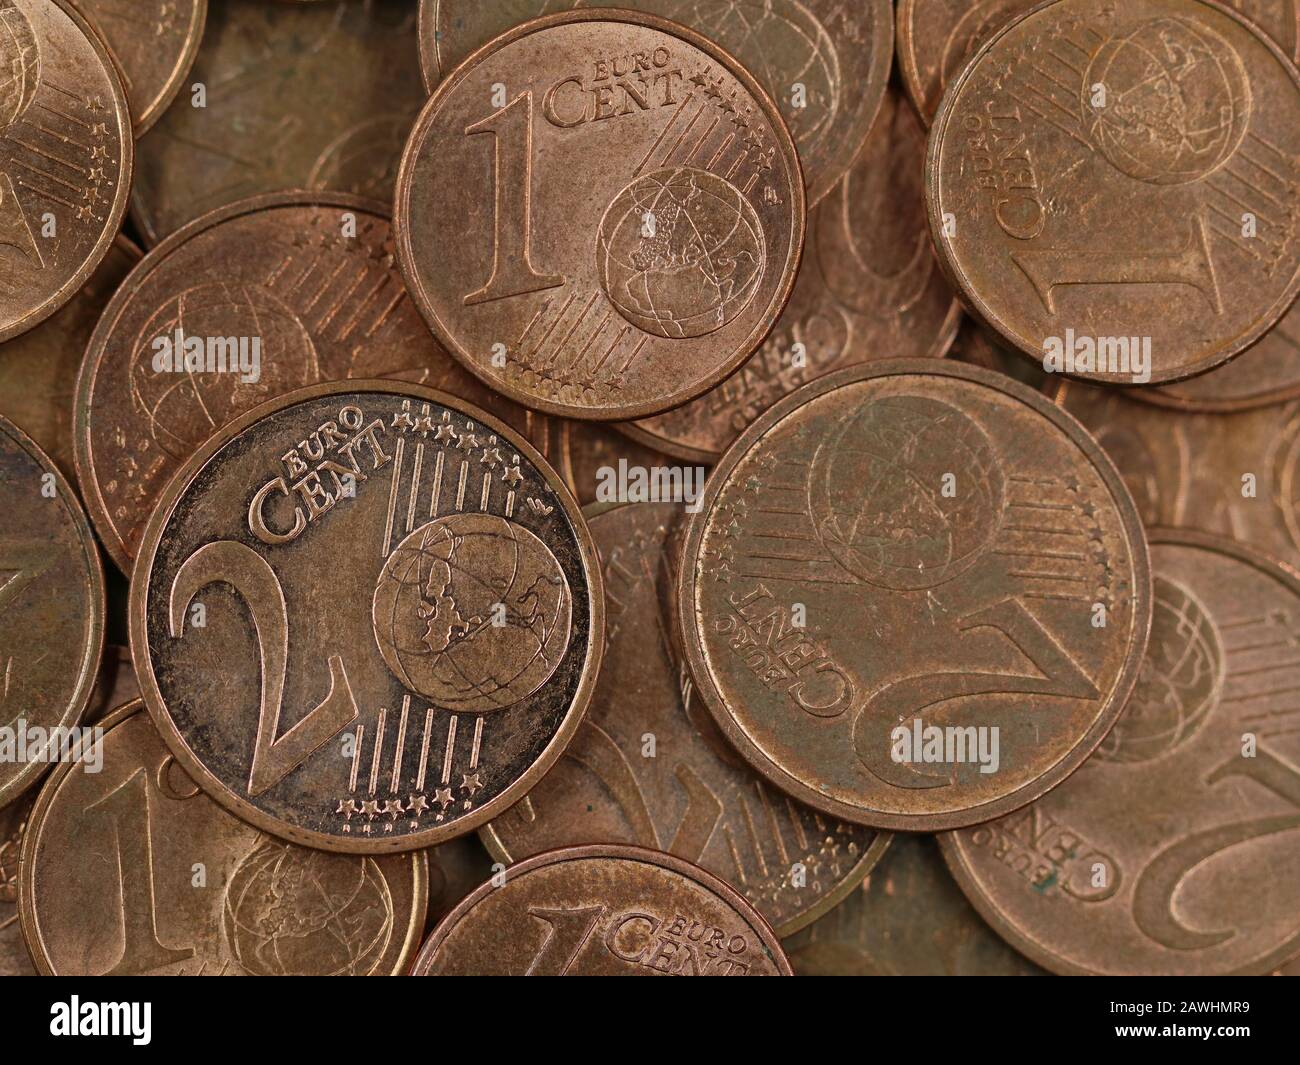 Nahaufnahme der alten gebrauchten ein- und zwei Euro-Cent-Münzen Hintergrund, Ende der kleinen Veränderung oder Bargeld Stockfoto